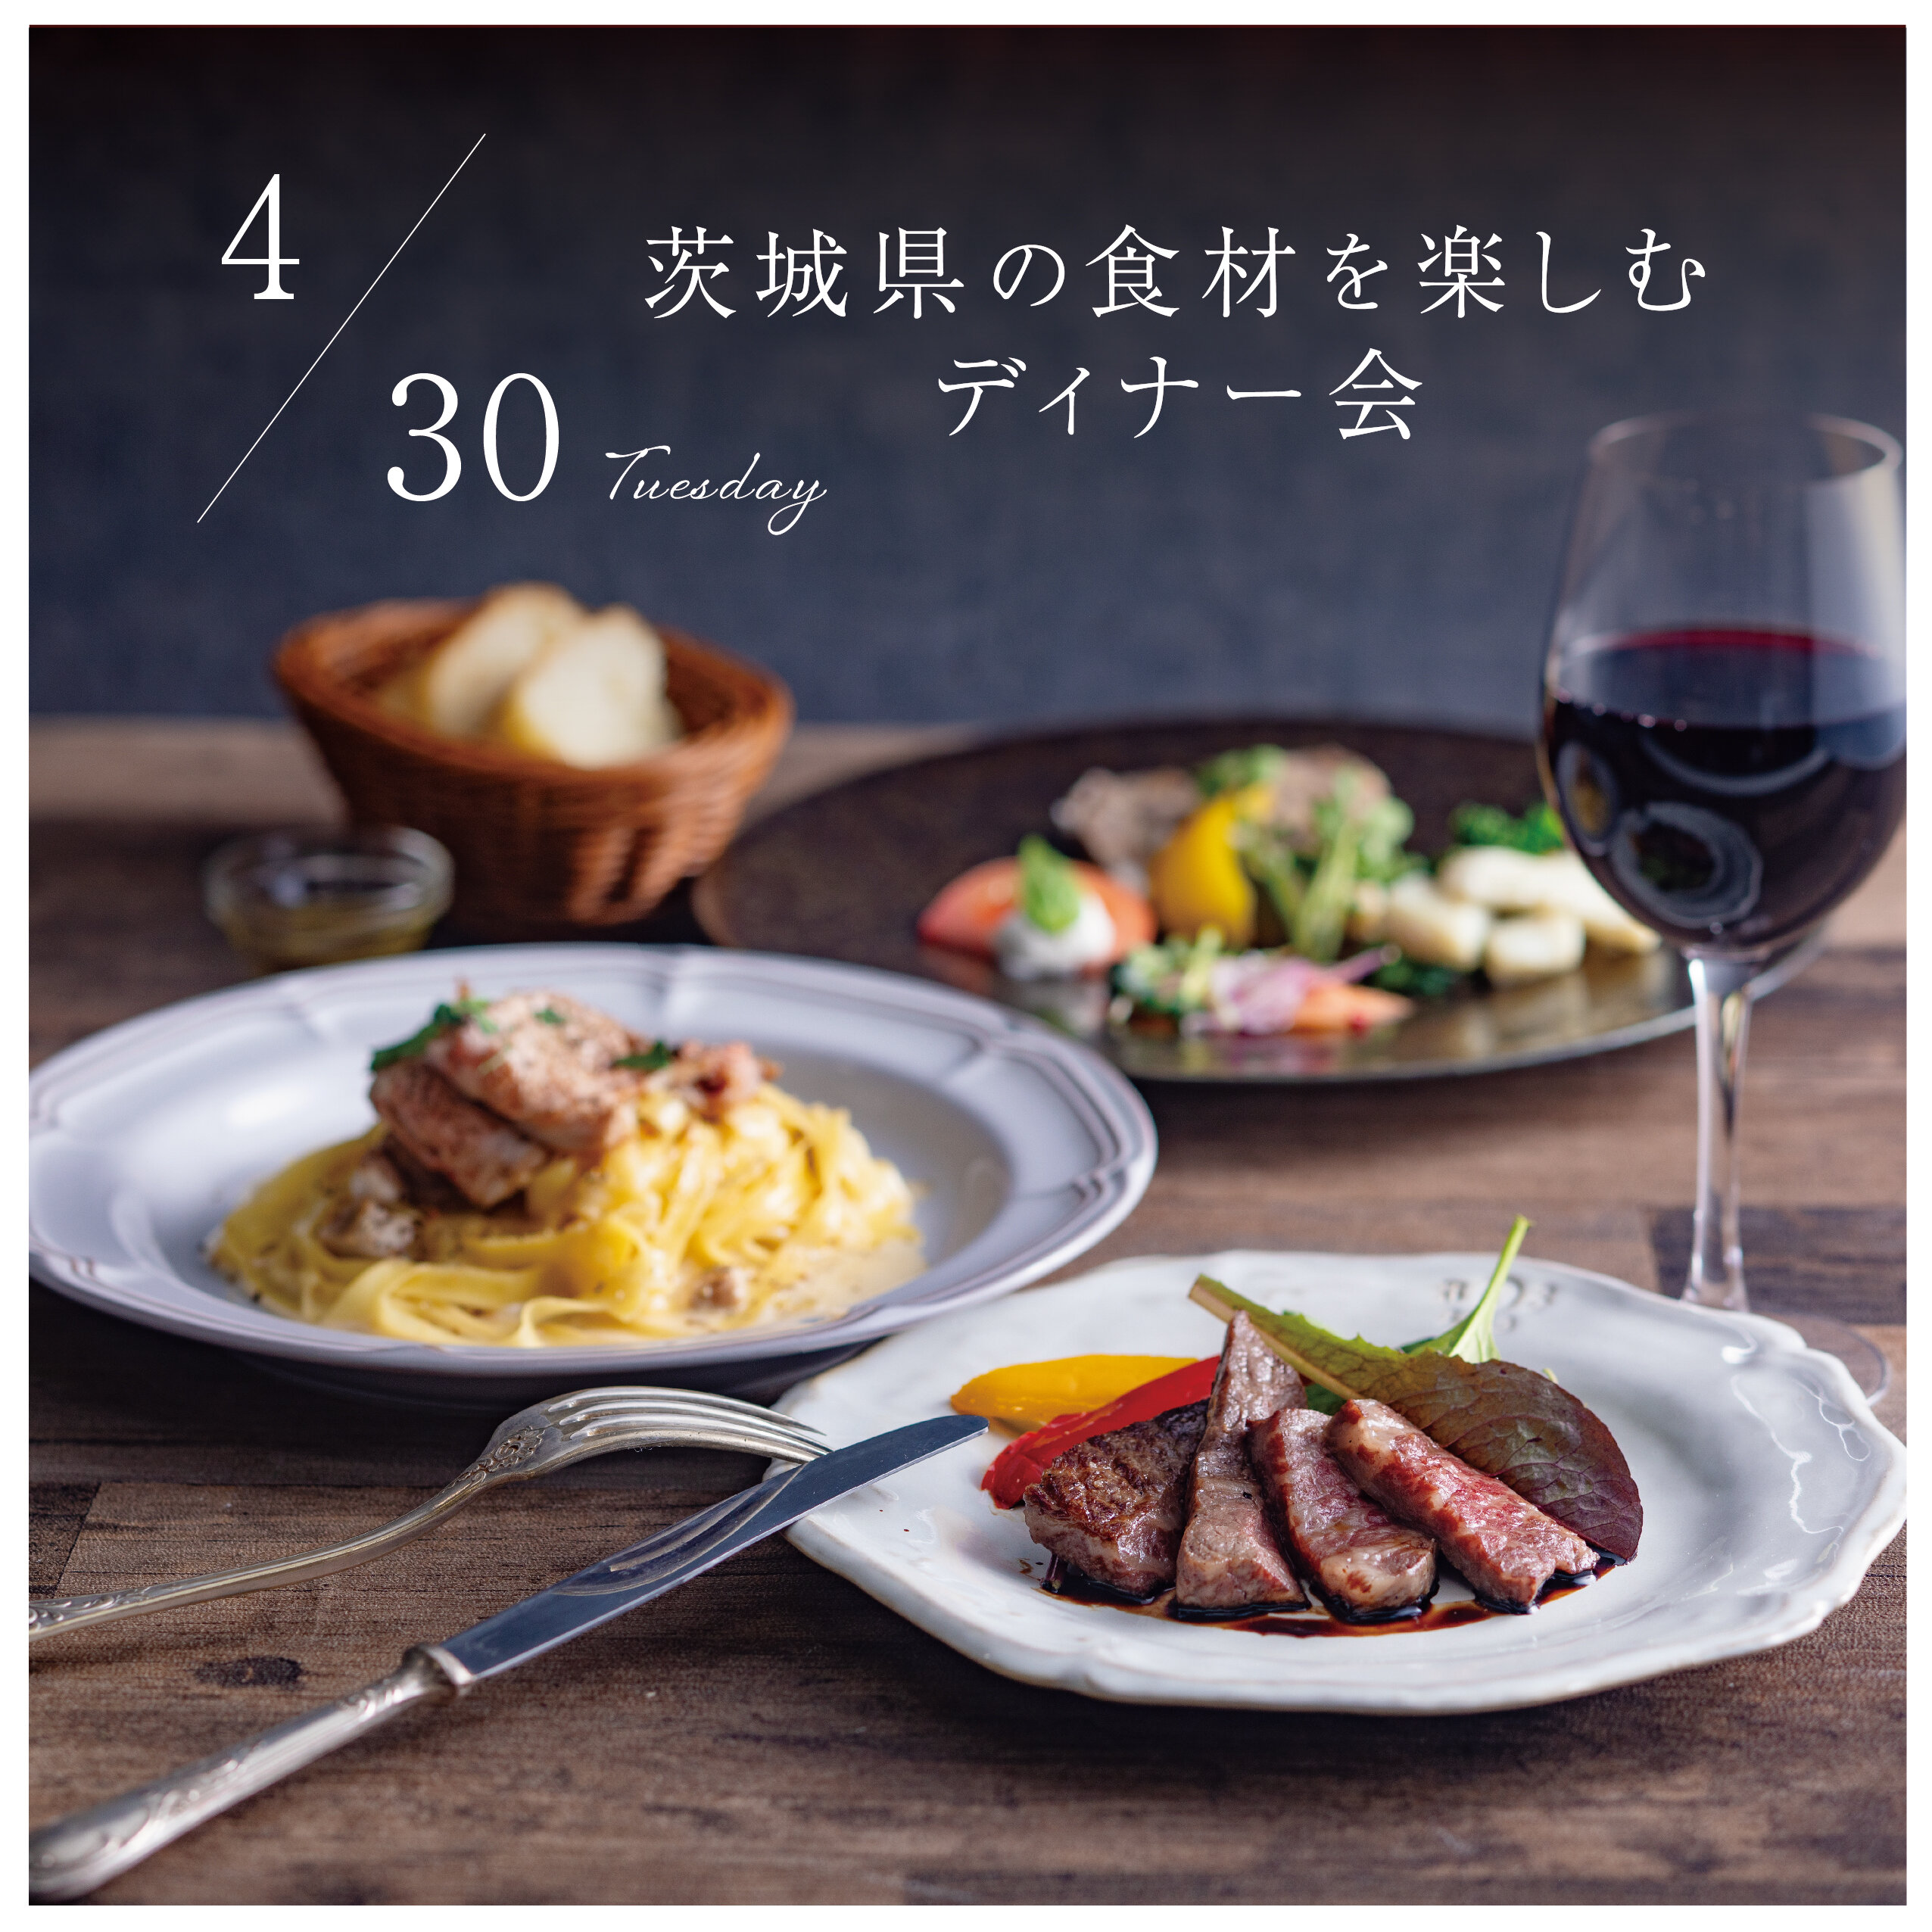 LMH-dinner試食会ちらし-240430-01.jpg